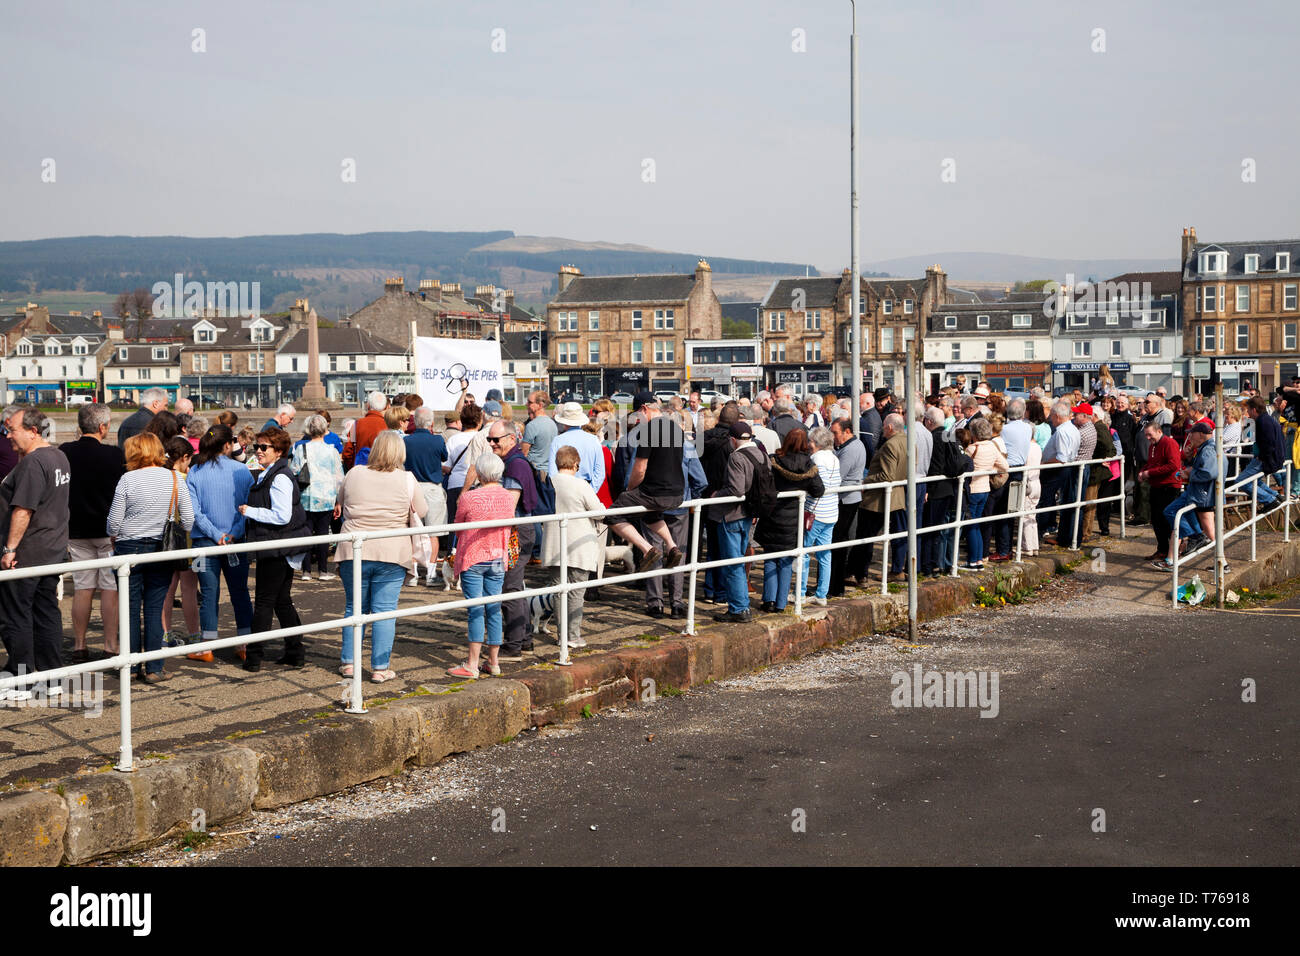 Speichern Sie die Massen an der Pier Rallye, Helensburgh, Schottland, organisiert von der Helensburgh Strandpromenade Entwicklungsprojekt mit MSPs Jackie Baillie und Mauric Stockfoto